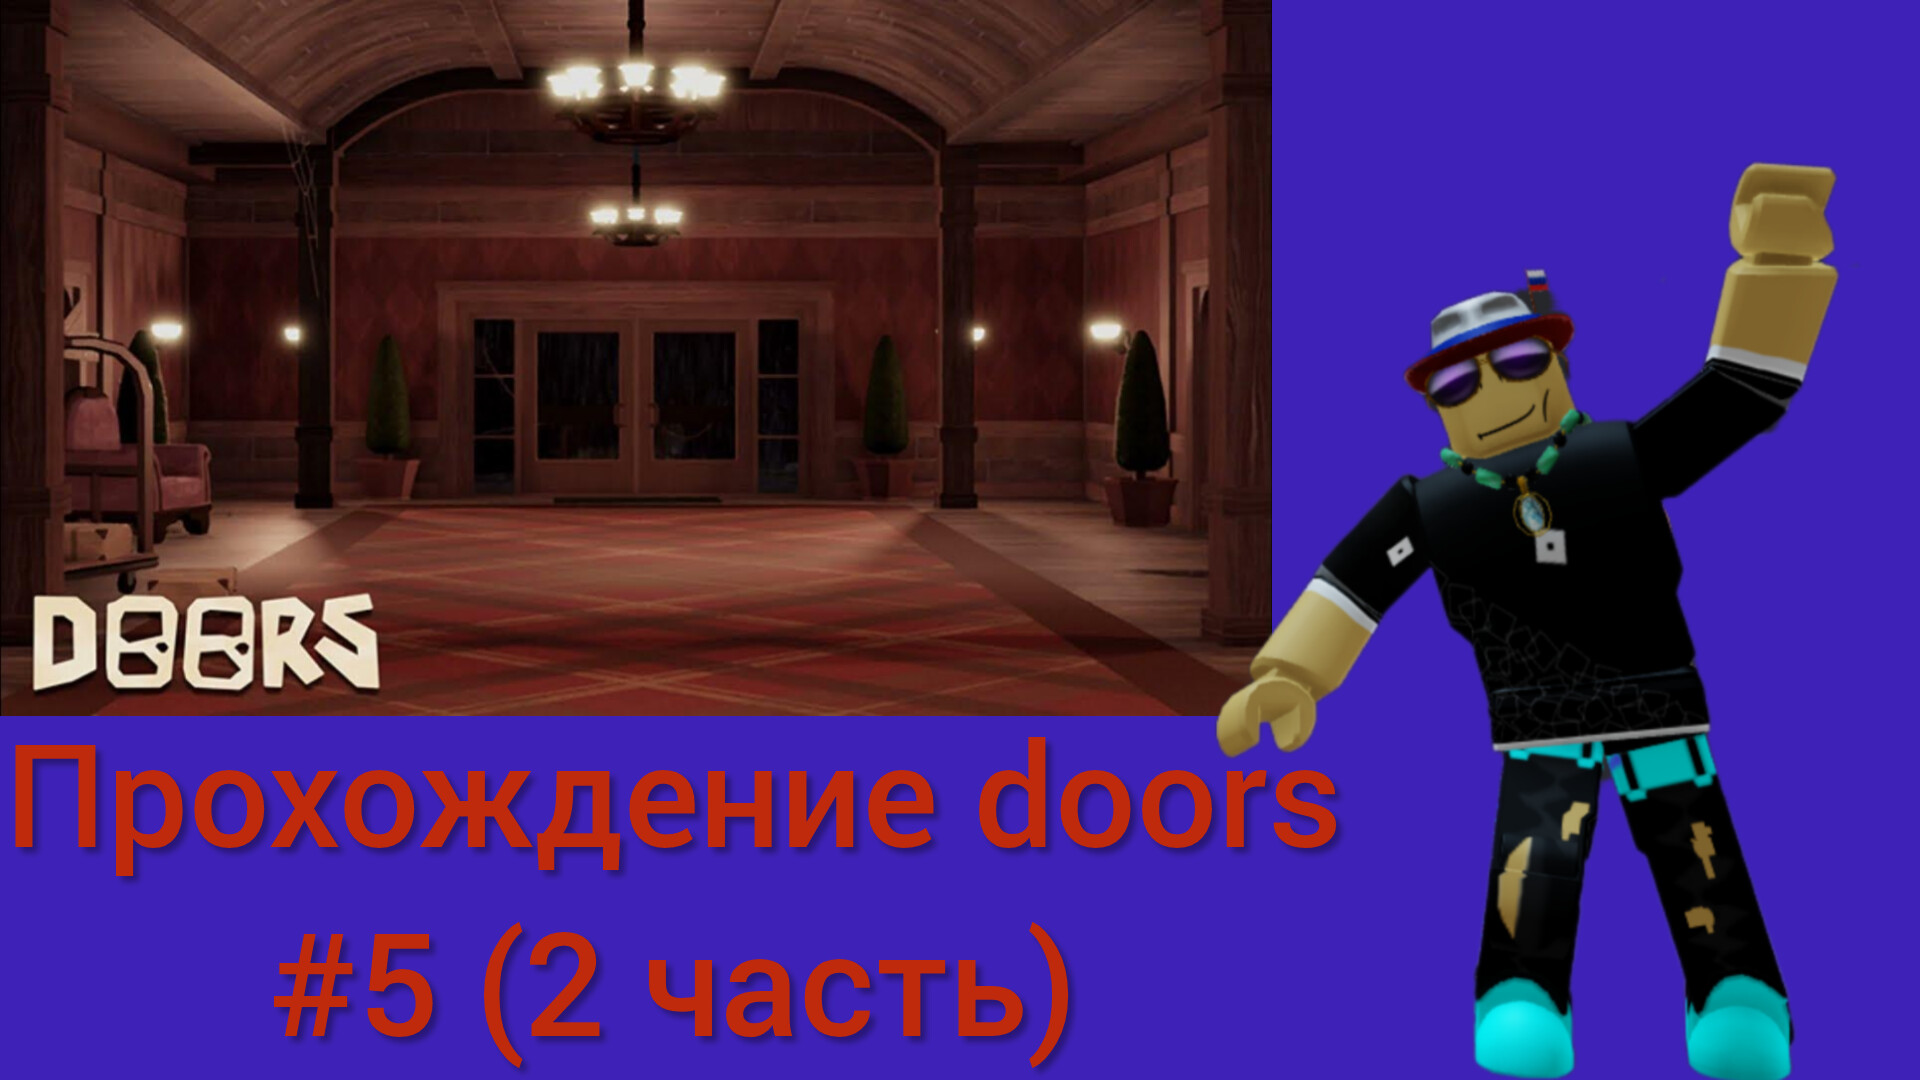 Прохождение doors #5 (2 часть)